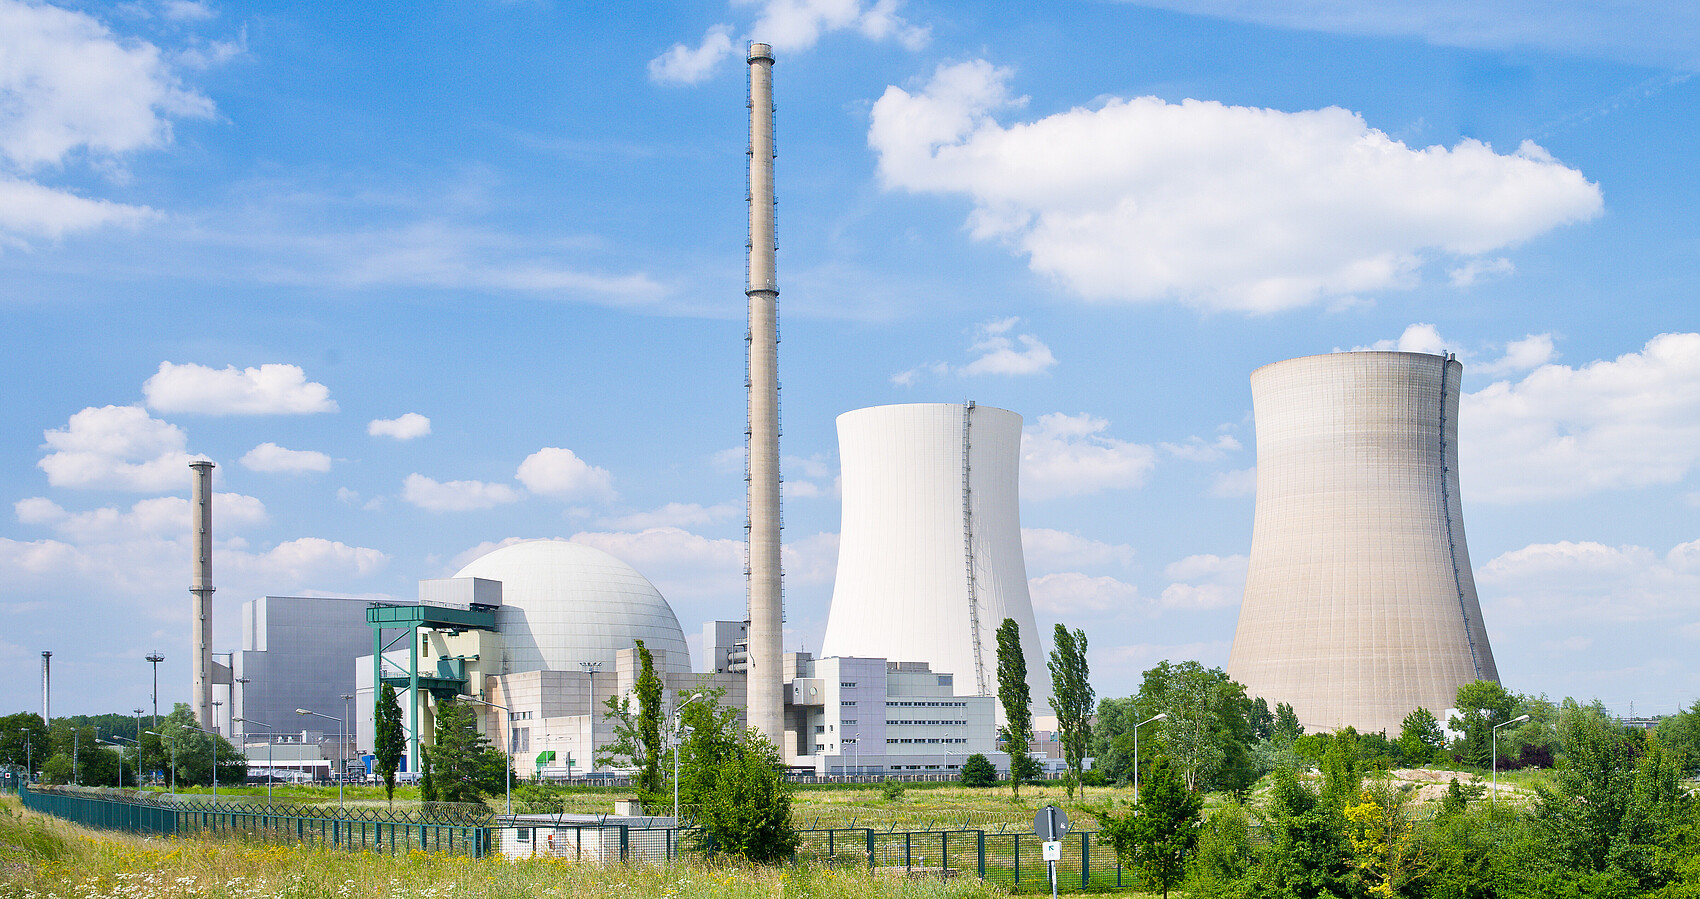 Bild zeigt ein Atomkraftwerk mit zwei Türmen